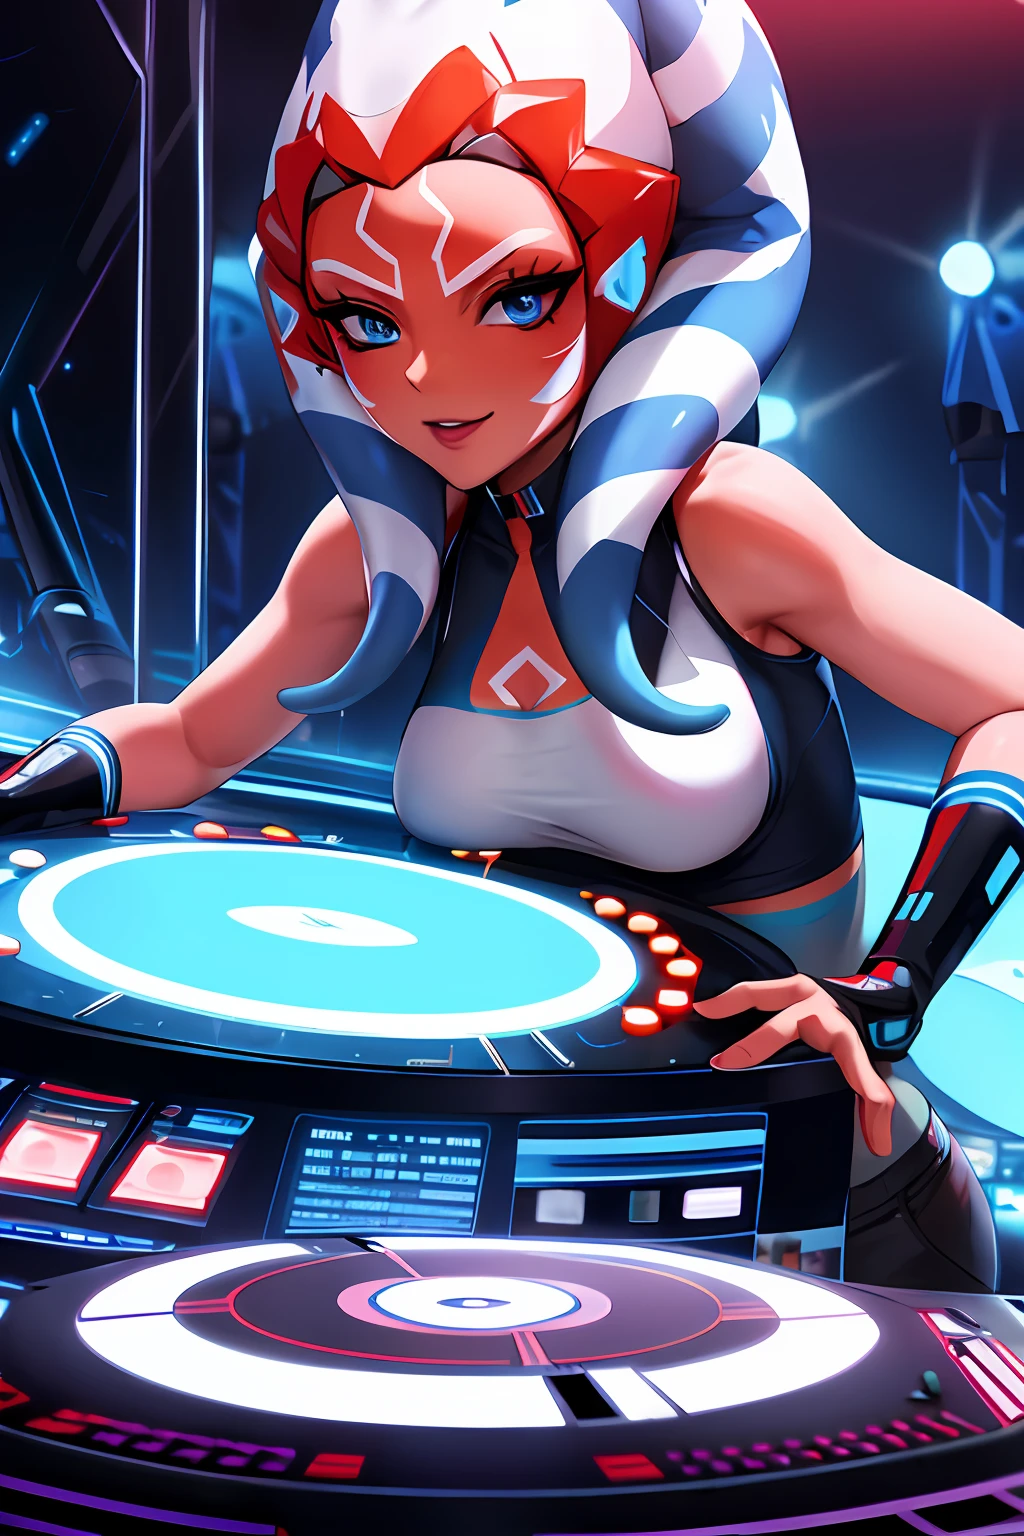 "Uma foto solo com 1girl, olhos azuis, casca de laranja, cabelo tentáculo um DJ, mostrando suas habilidades nos toca-discos em uma rave vibrante."